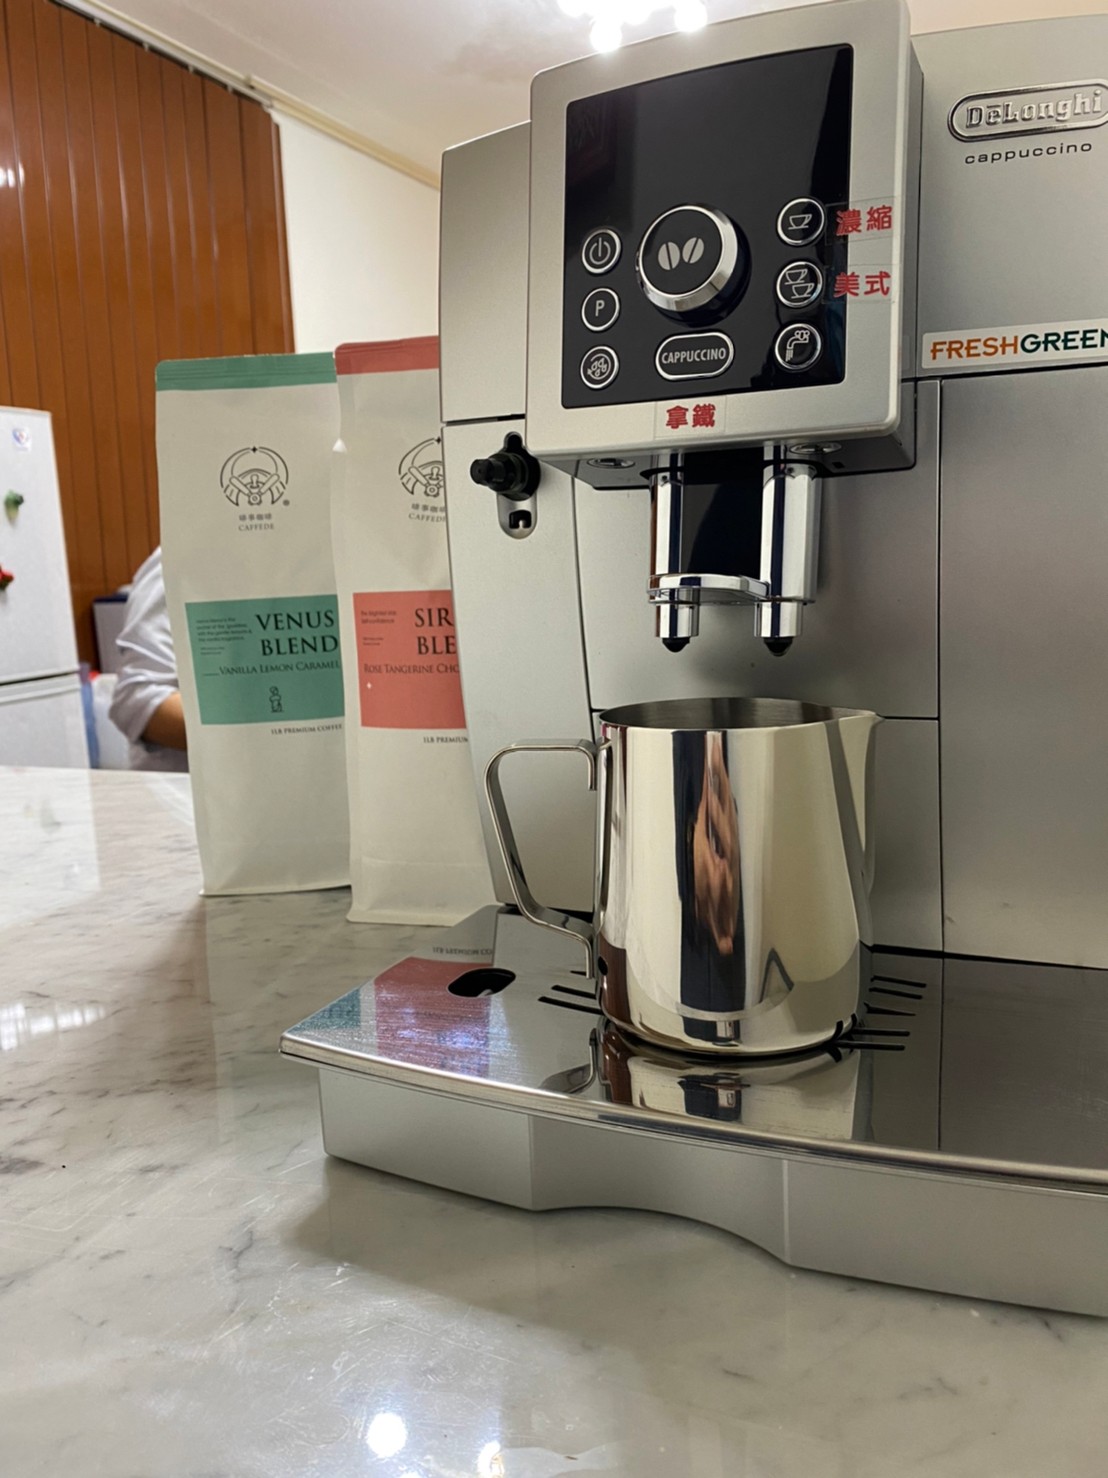 delonghi典華型 23.460.s 長野國際開發有限公司 全自動咖啡機 迪朗奇